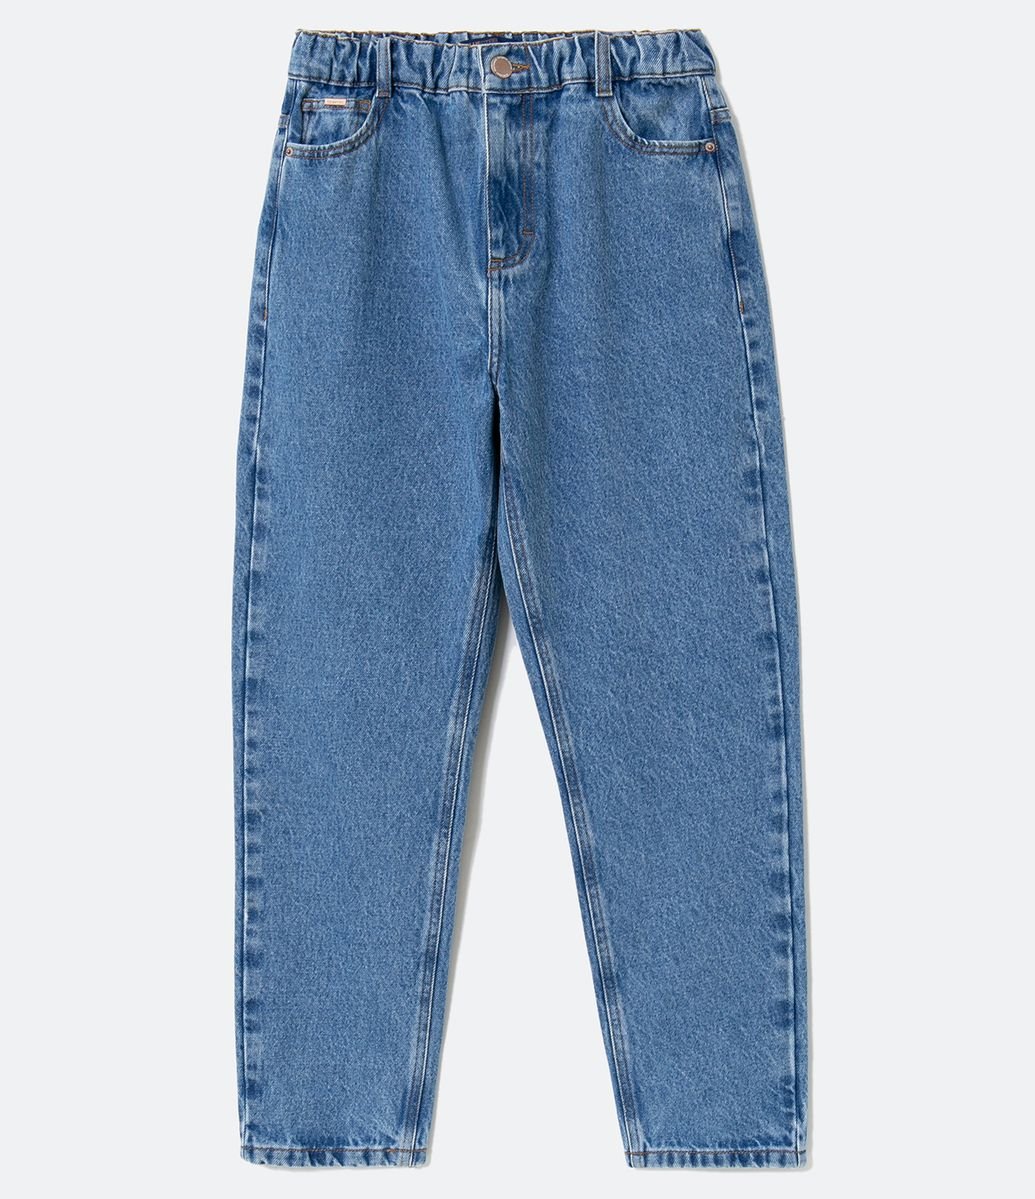 calça jeans com cintura de elastico